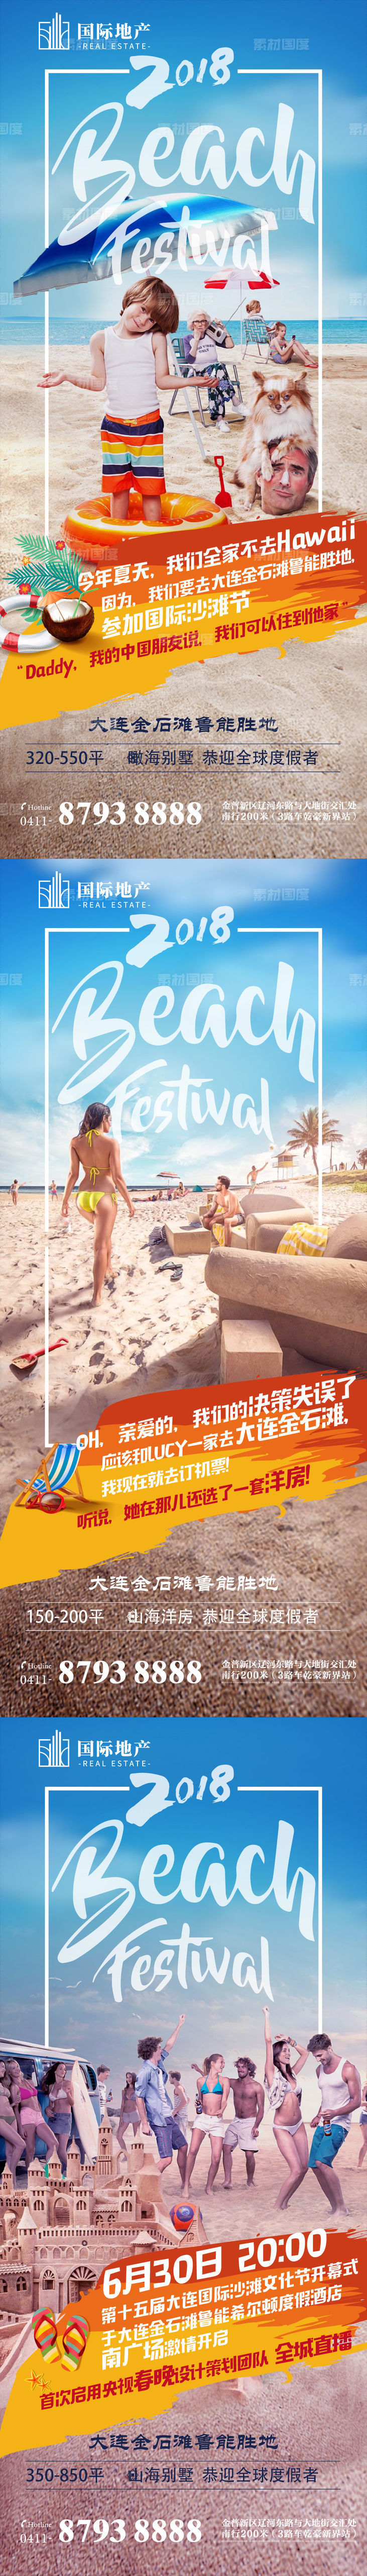 蓝色清爽地产沙滩节嘉年华泳衣派对海报